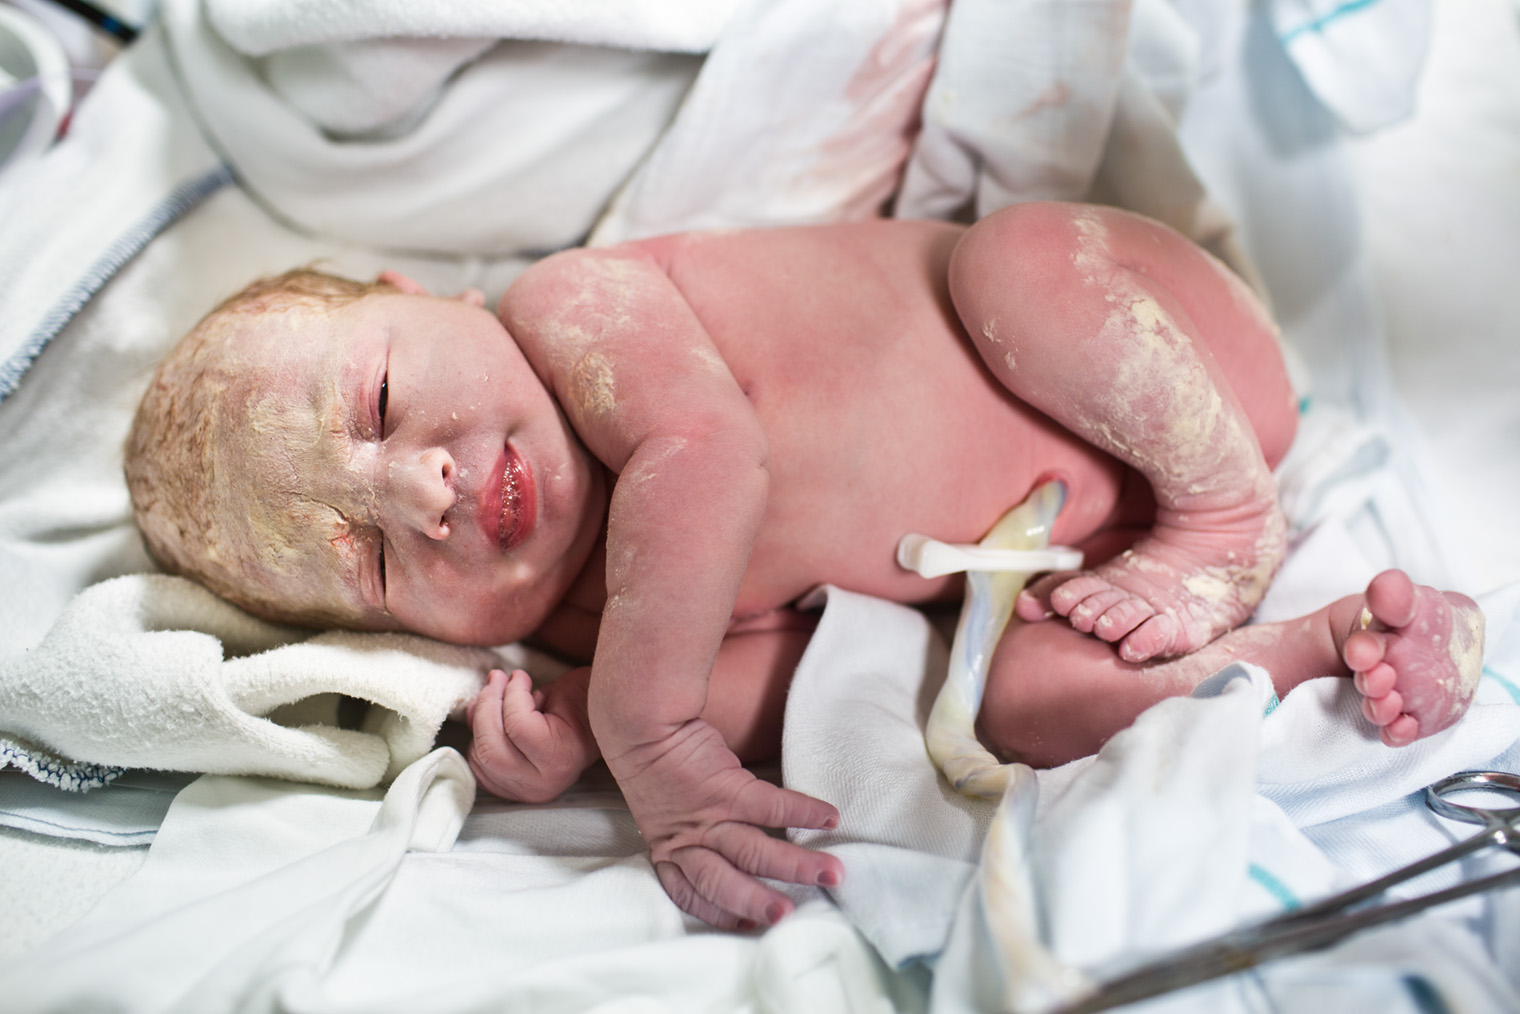 Сразу после рождения тело ребенка частично покрывает первородная смазка, которая защищает чувствительную кожу. Маме не нужно ничего с ней делать: некоторая часть впитается сама, а остальное сотрудники роддома смоют при купании. Фотография: Noctiluxx / Getty